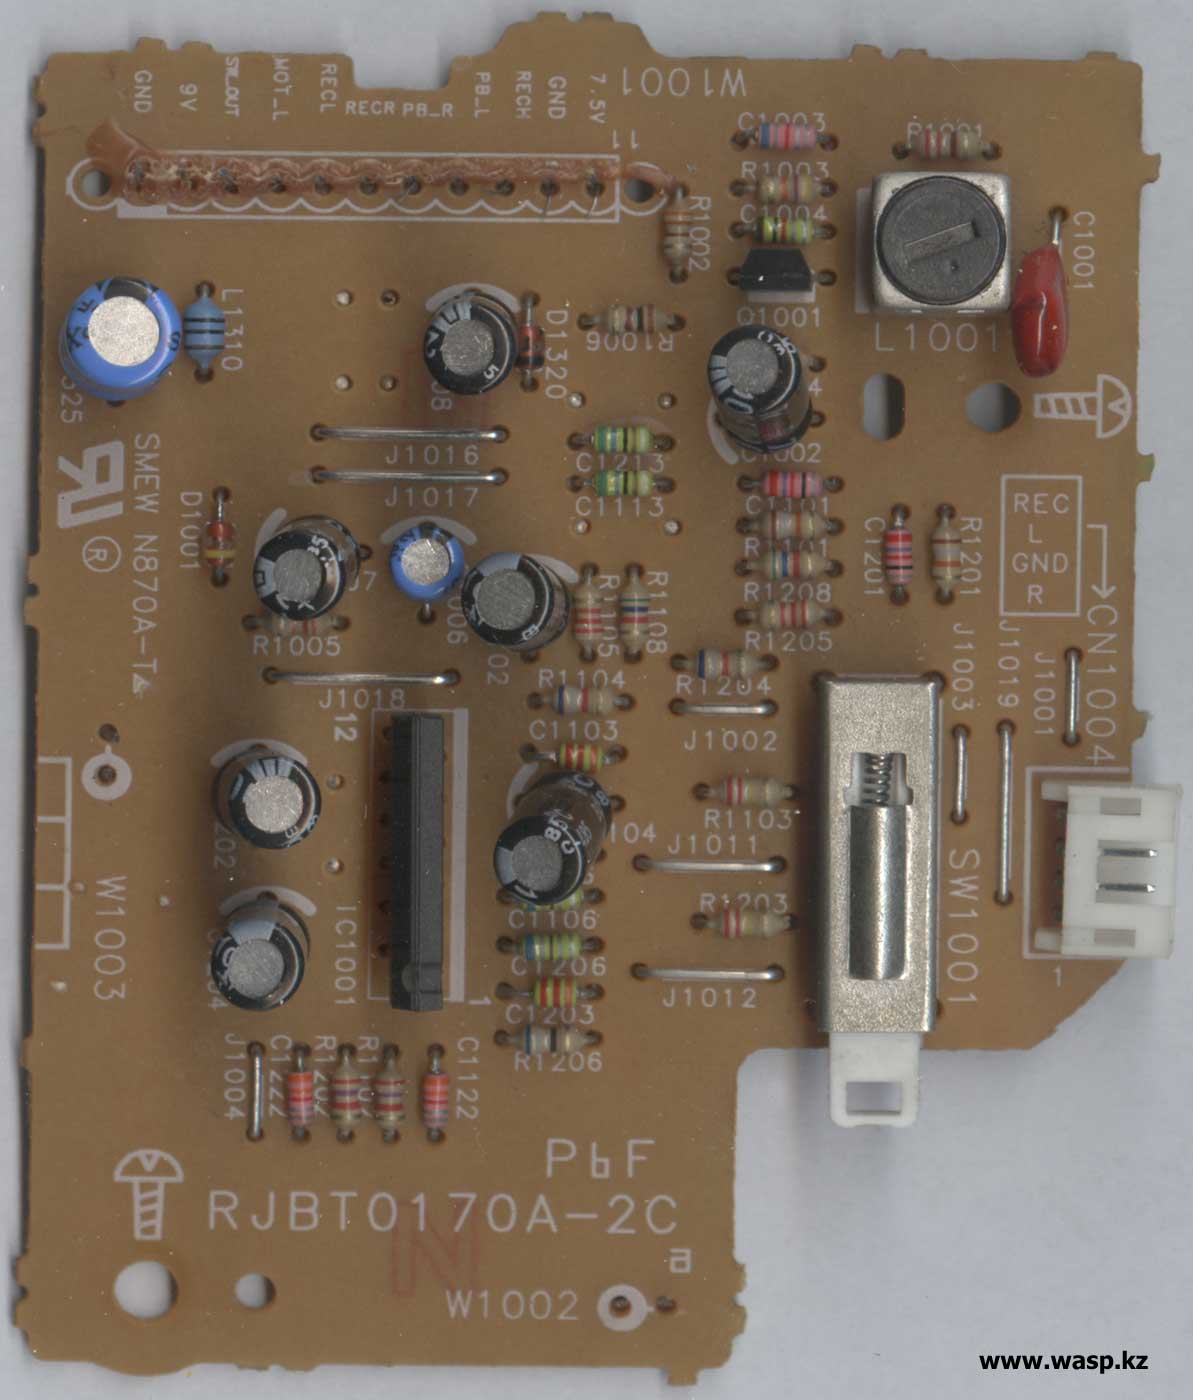 схема платы RJBT0170A-2C в Panasonic RX-D29